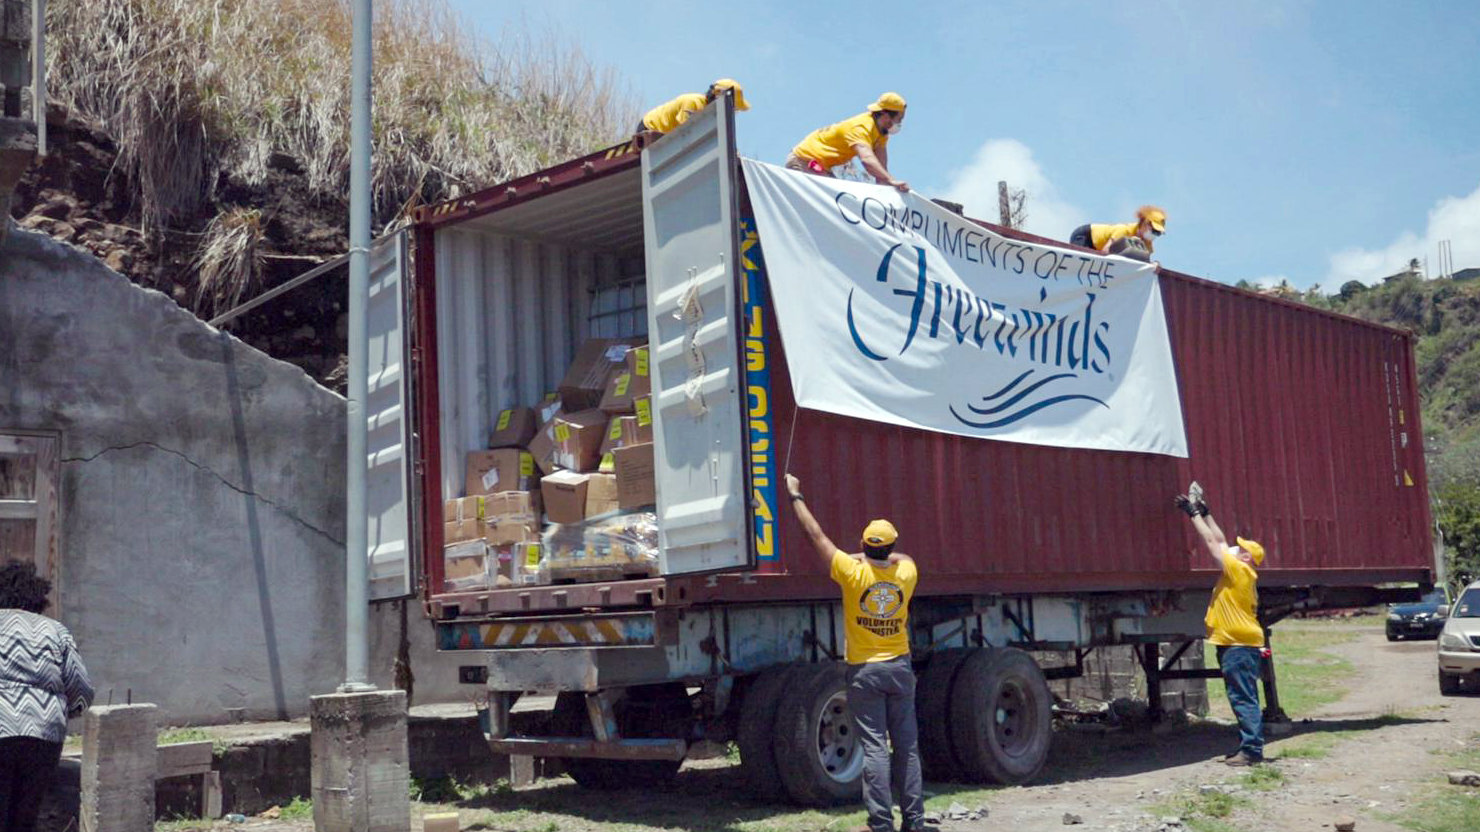 Et hold Frivillige Hjælpere losser en container med vigtige forsyninger, som
Freewinds sendte til øen med støtte fra IAS.